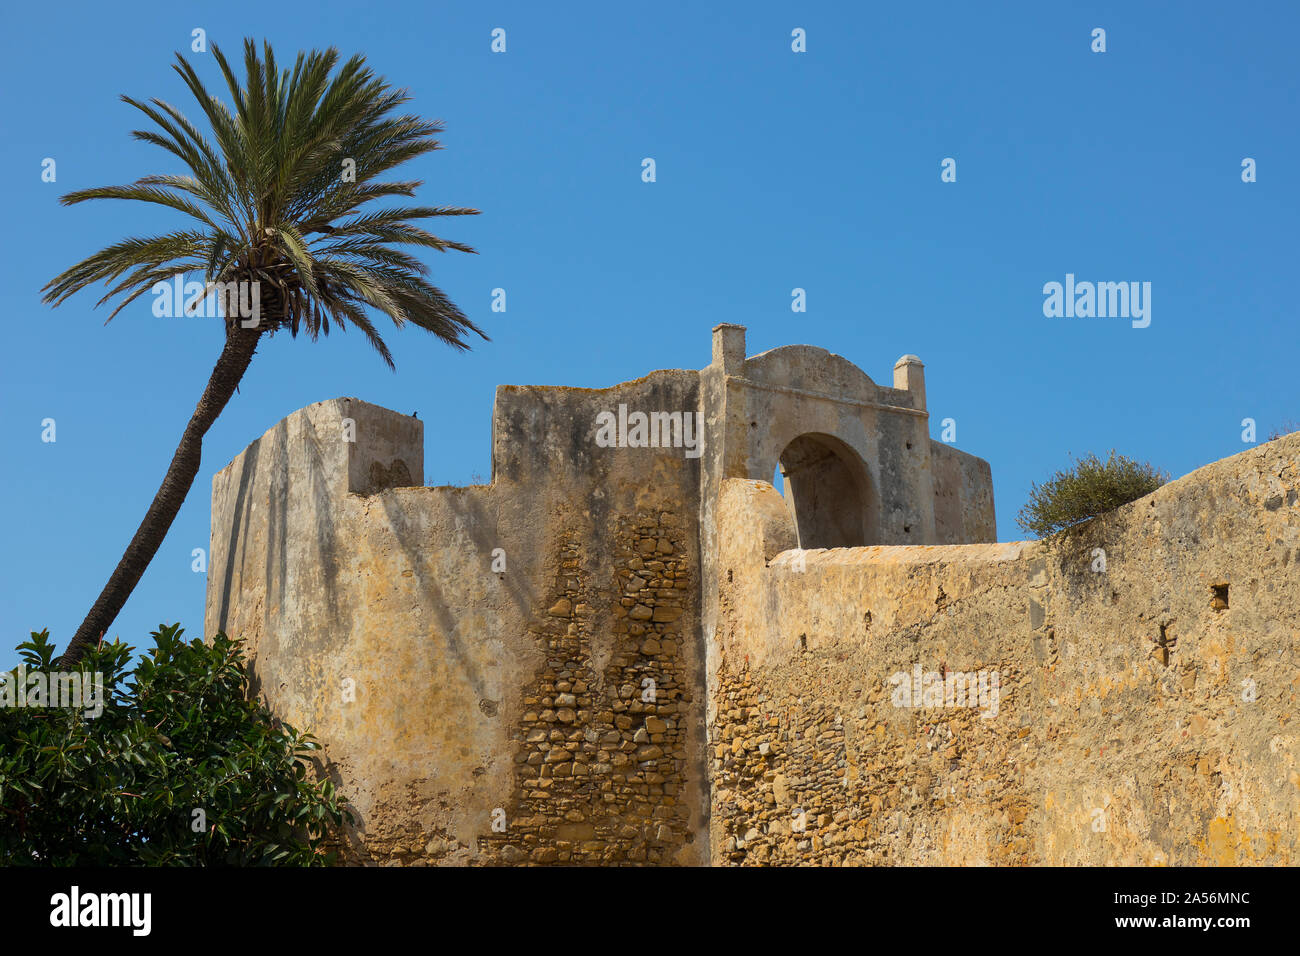 L'extérieur de l'ancien mur de fortification en pierre et la porte d'Asilah, Maroc avec un ciel bleu Banque D'Images